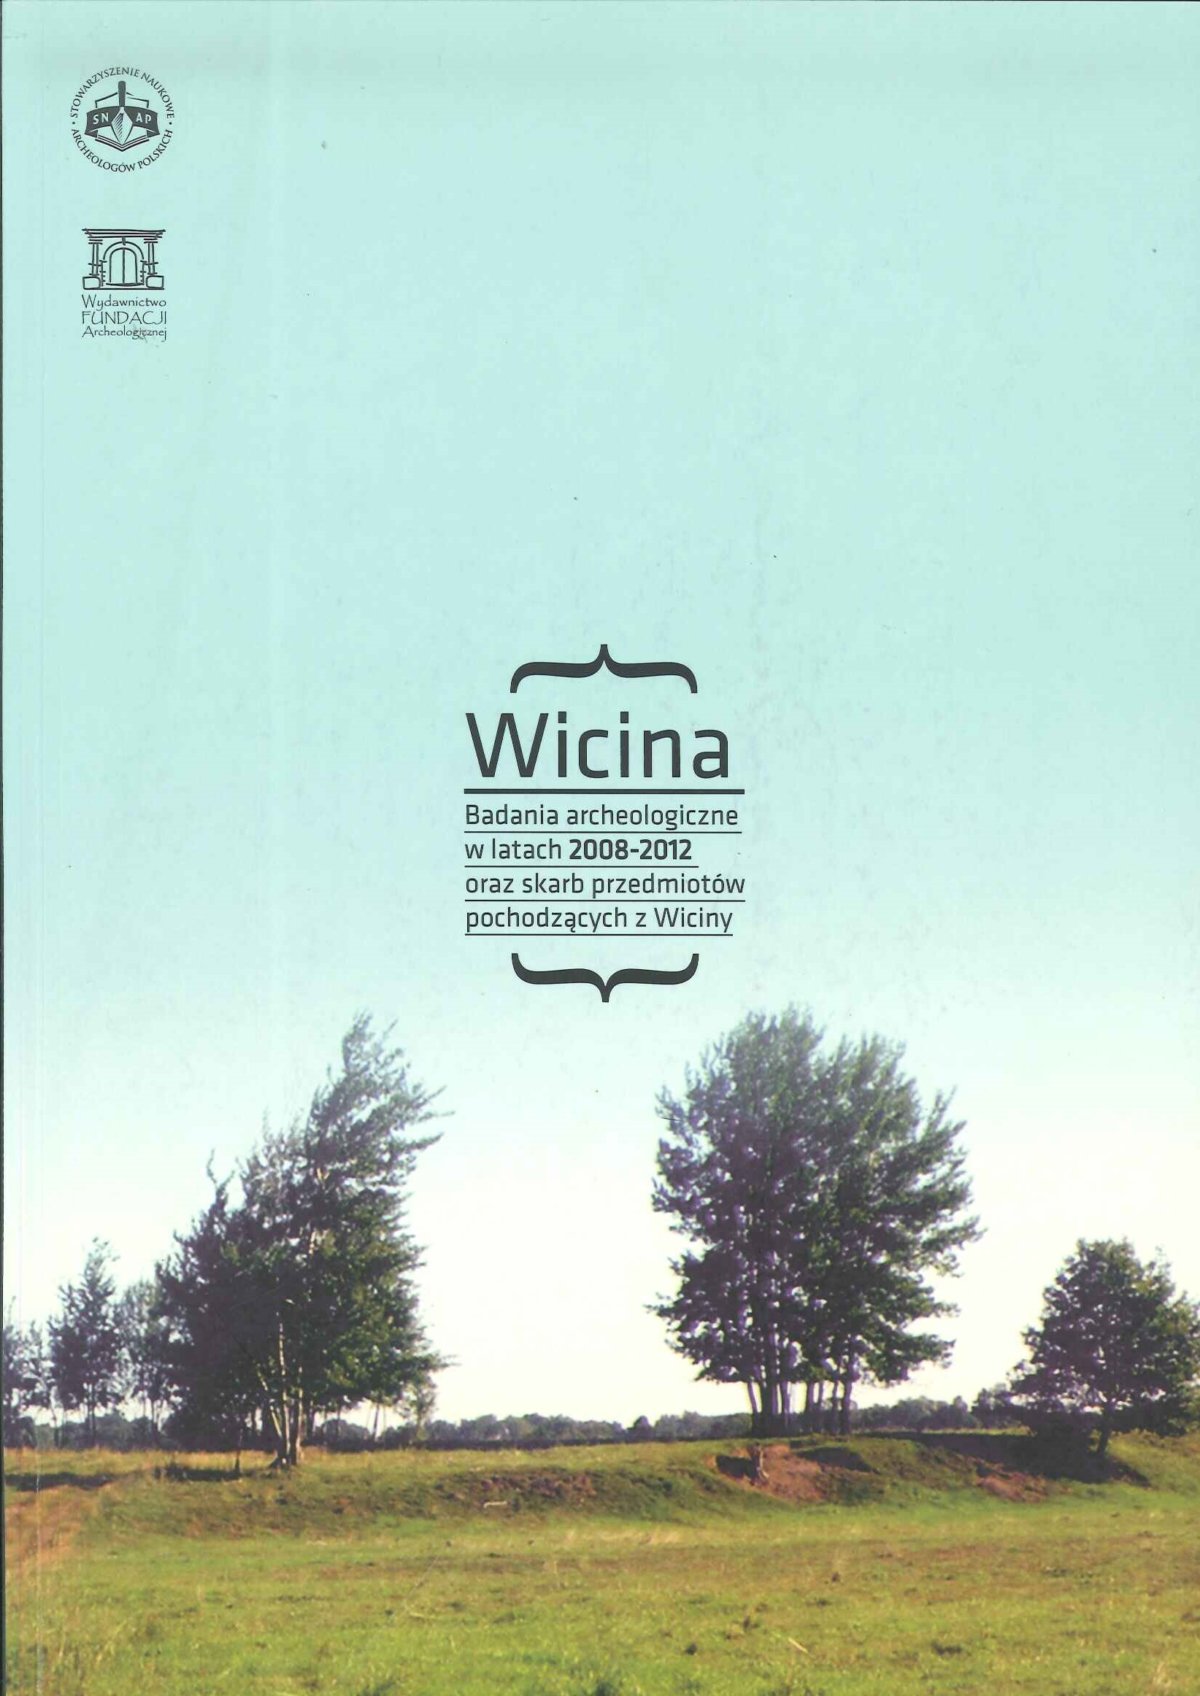 Wicina : badania archeologiczne w latach 2008-2012 oraz skarb przedmiotów pochodzących z Wiciny / pod redakcją Aliny Jaszewskiej i Sławomira Kałagate.